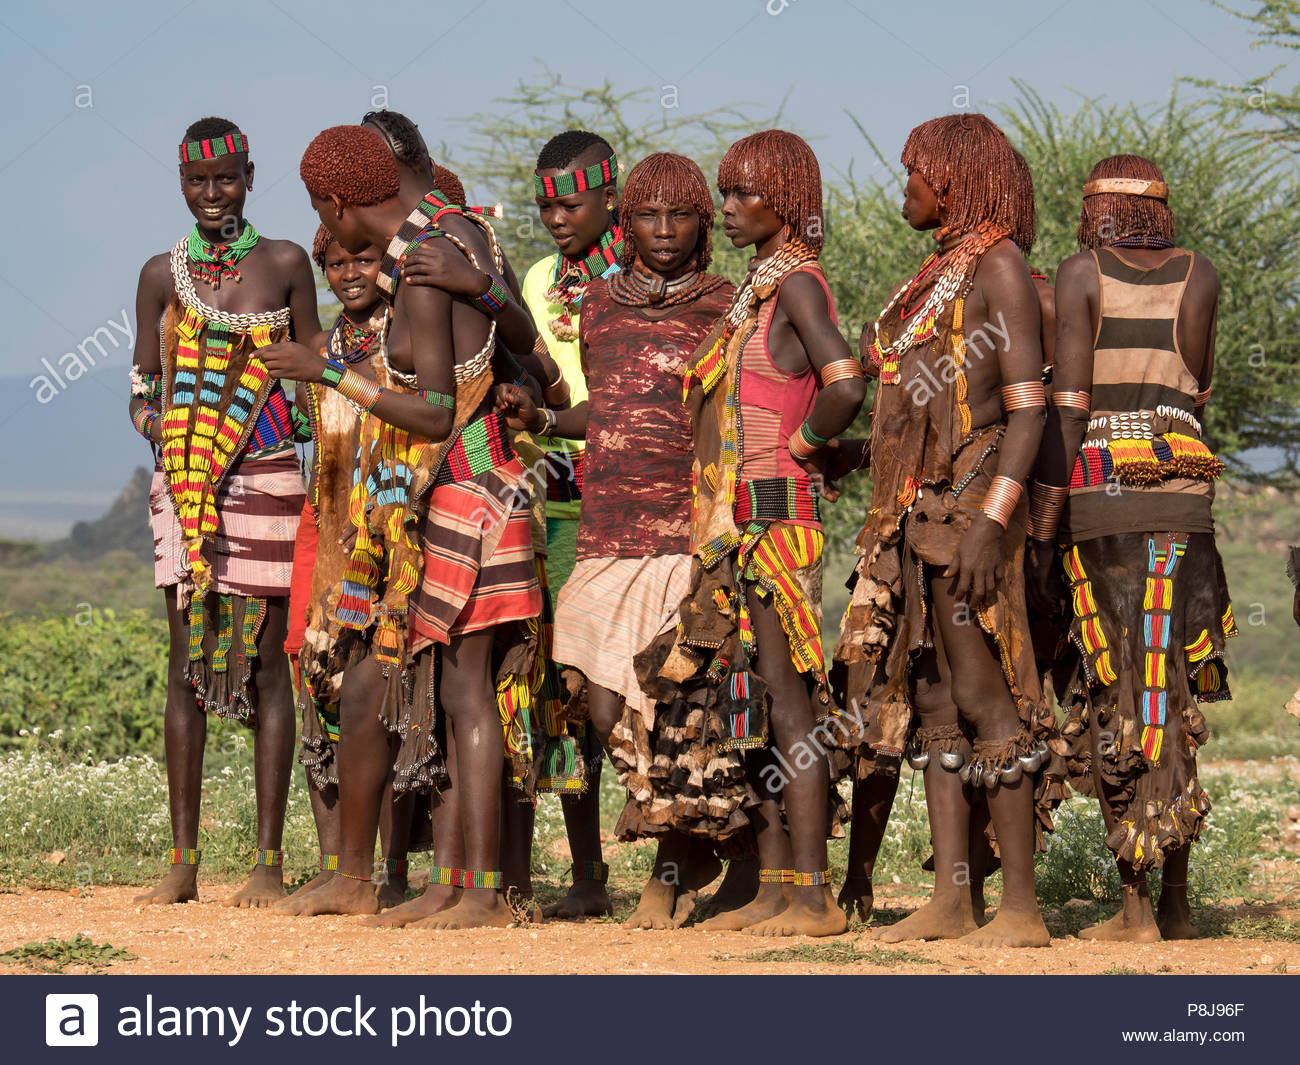 Junge Frauen Von Hamar In Traditioneller Kleidung Mit Halsketten Omo Region Athiopien Stockfotografie Alamy